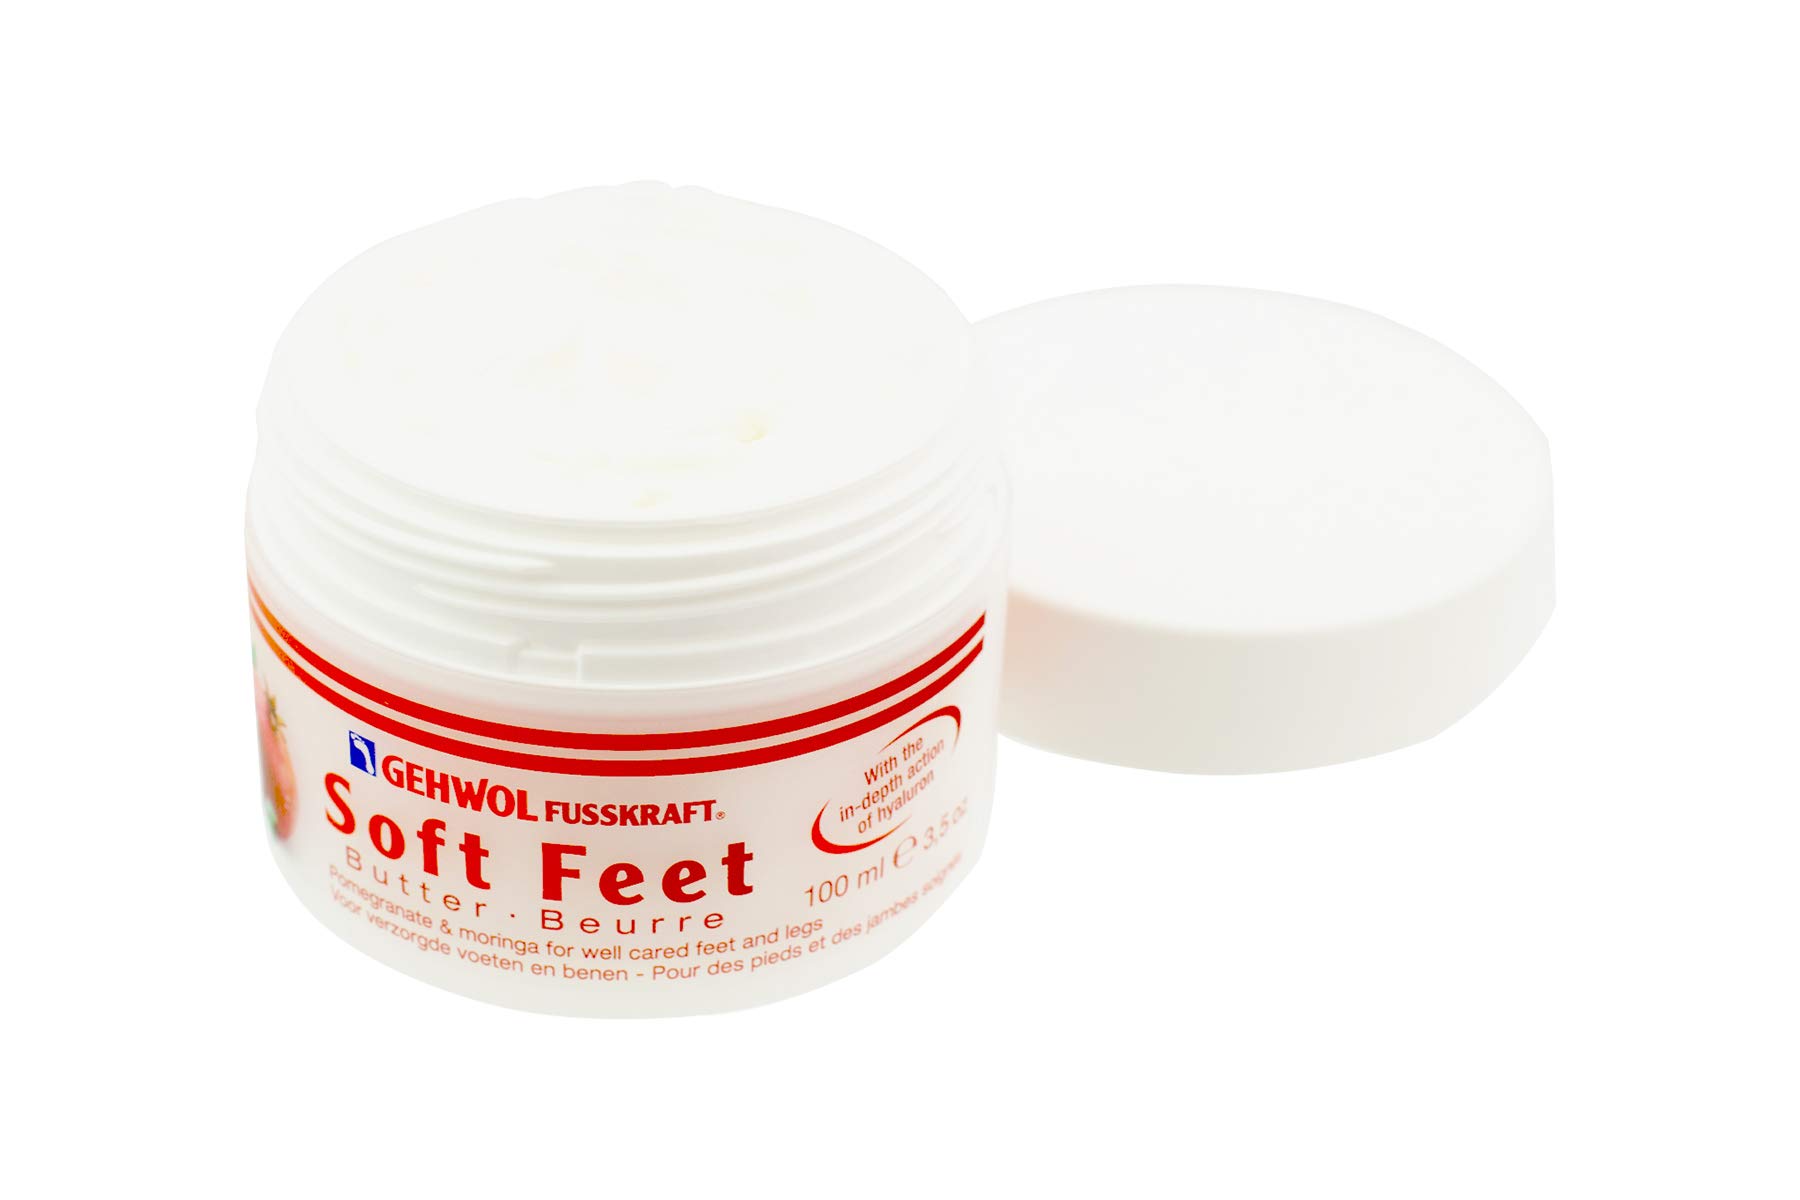 GEHWOL Soft Feet Butter, 3.5 oz.